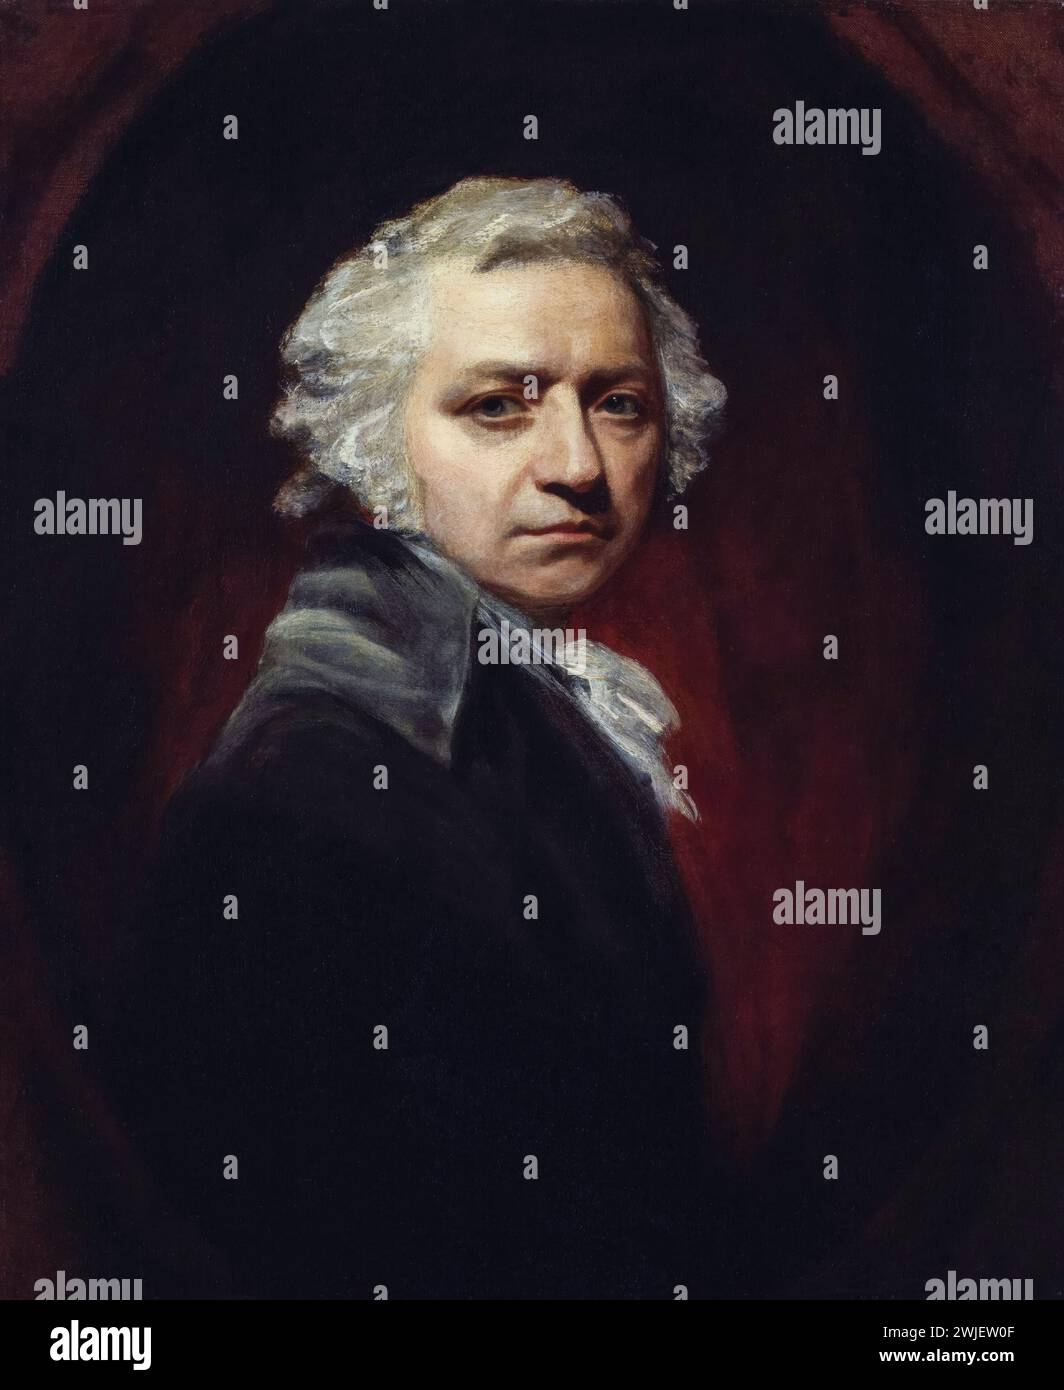 Henry Fuseli (Johann Heinrich Füssli, 1741-1825), peintre anglo-suisse, portrait peint à l'huile sur toile par John Opie, 1794 Banque D'Images